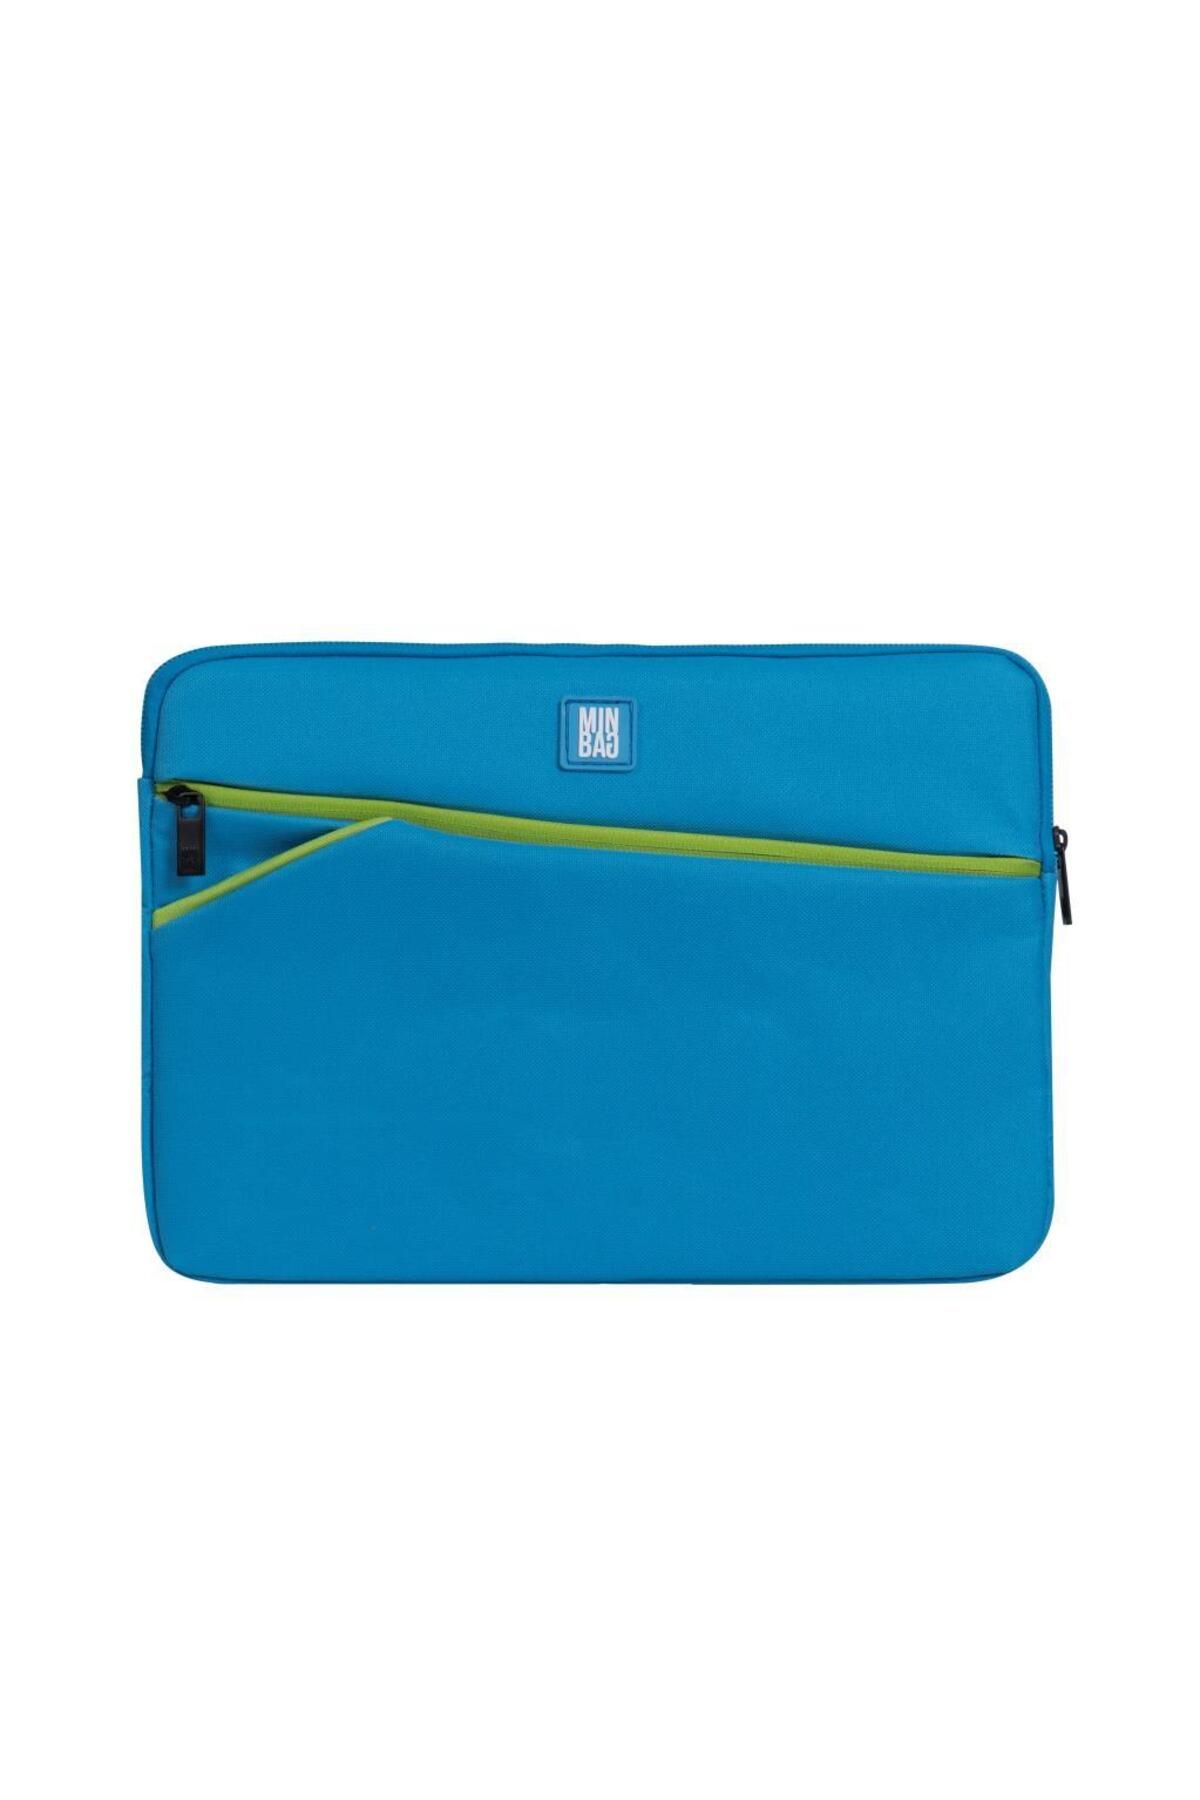 Minbag Alice 10,5"-13" Laptop Ve Tablet Çantası Mavi